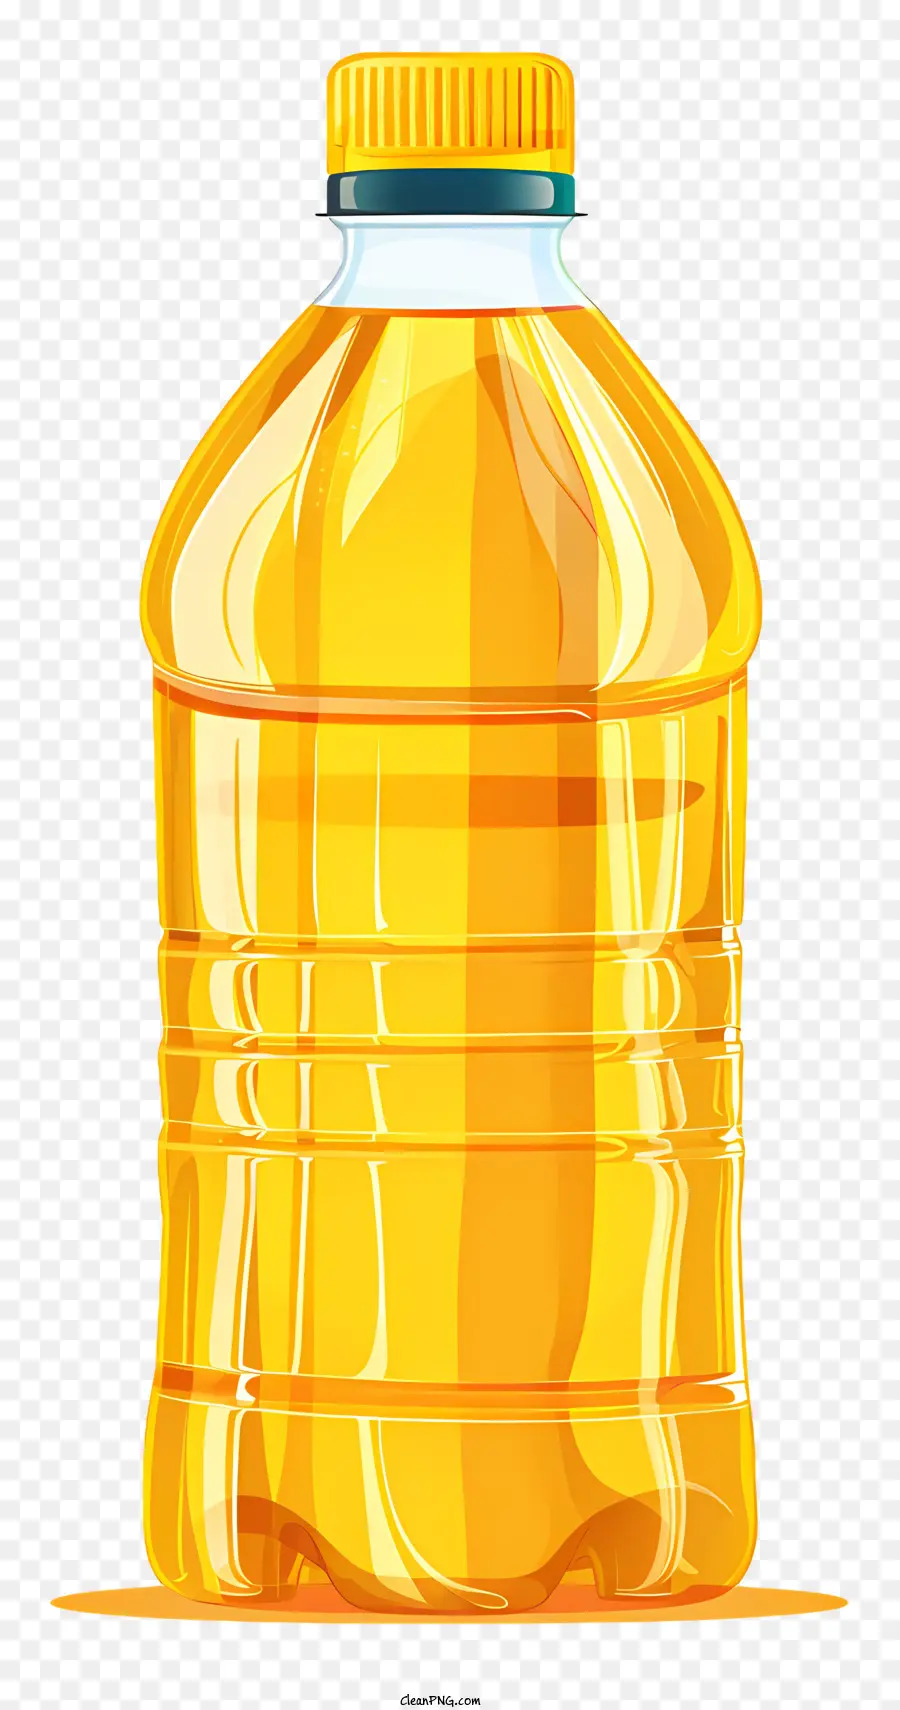 Kunststoff Flasche - Klar gelbes Öl in Plastikflasche